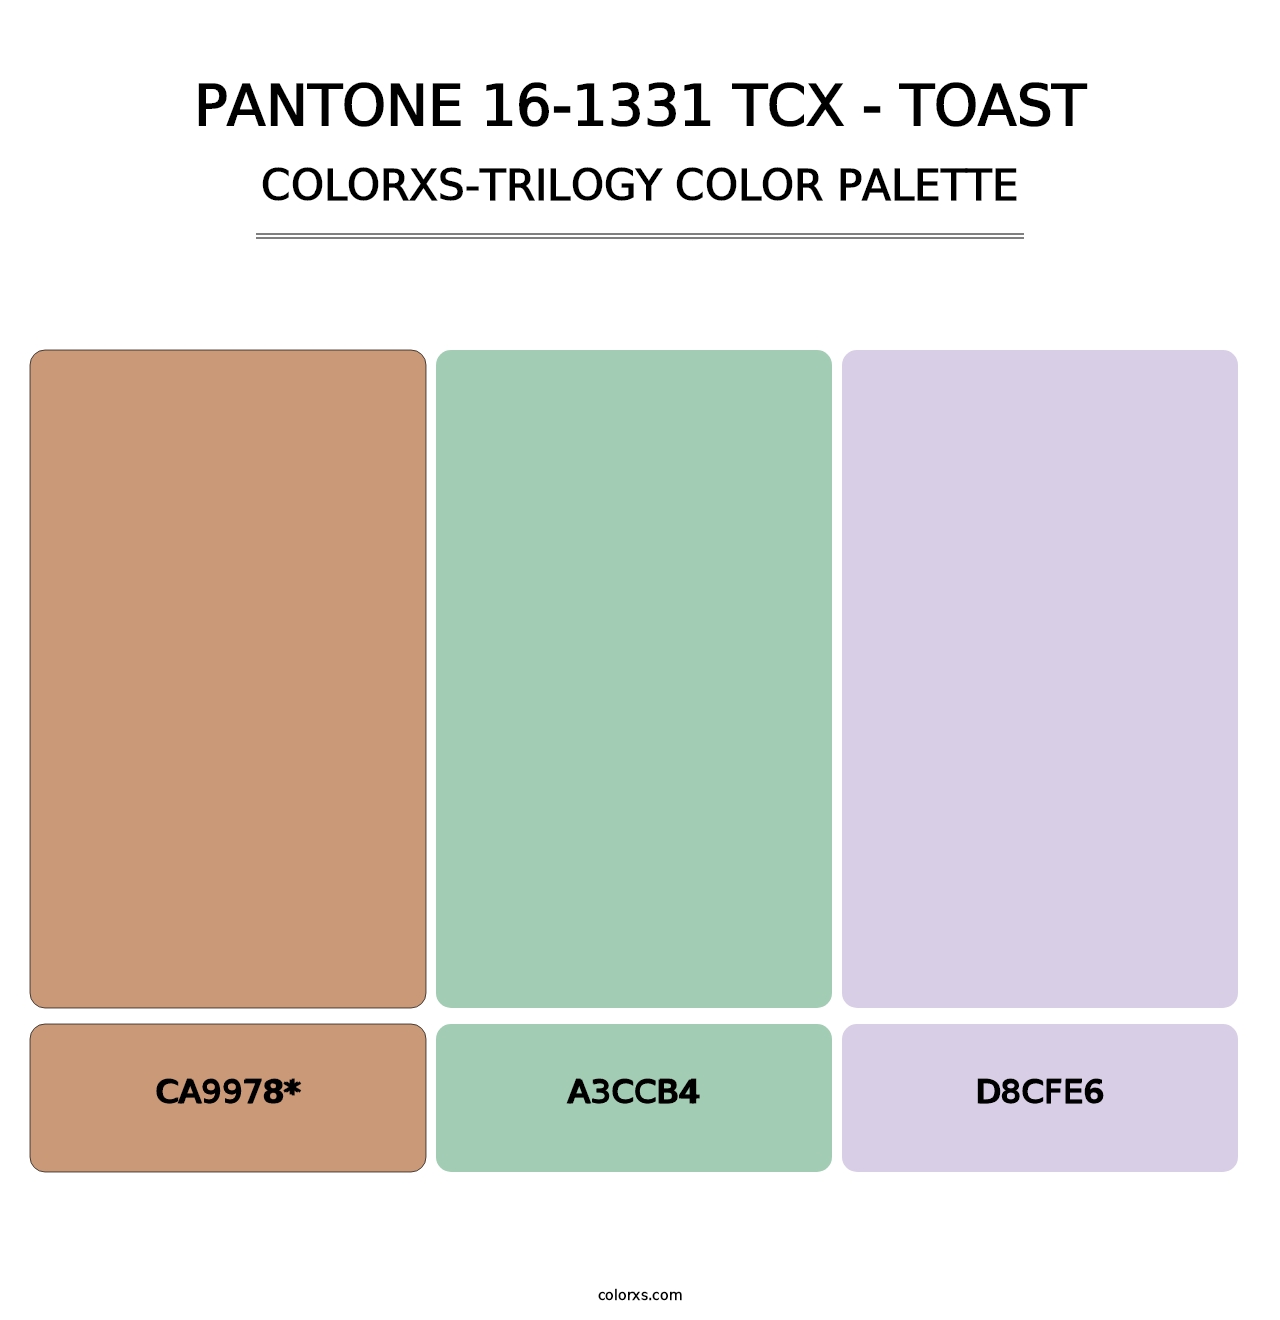 PANTONE 16-1331 TCX - Toast - Colorxs Trilogy Palette